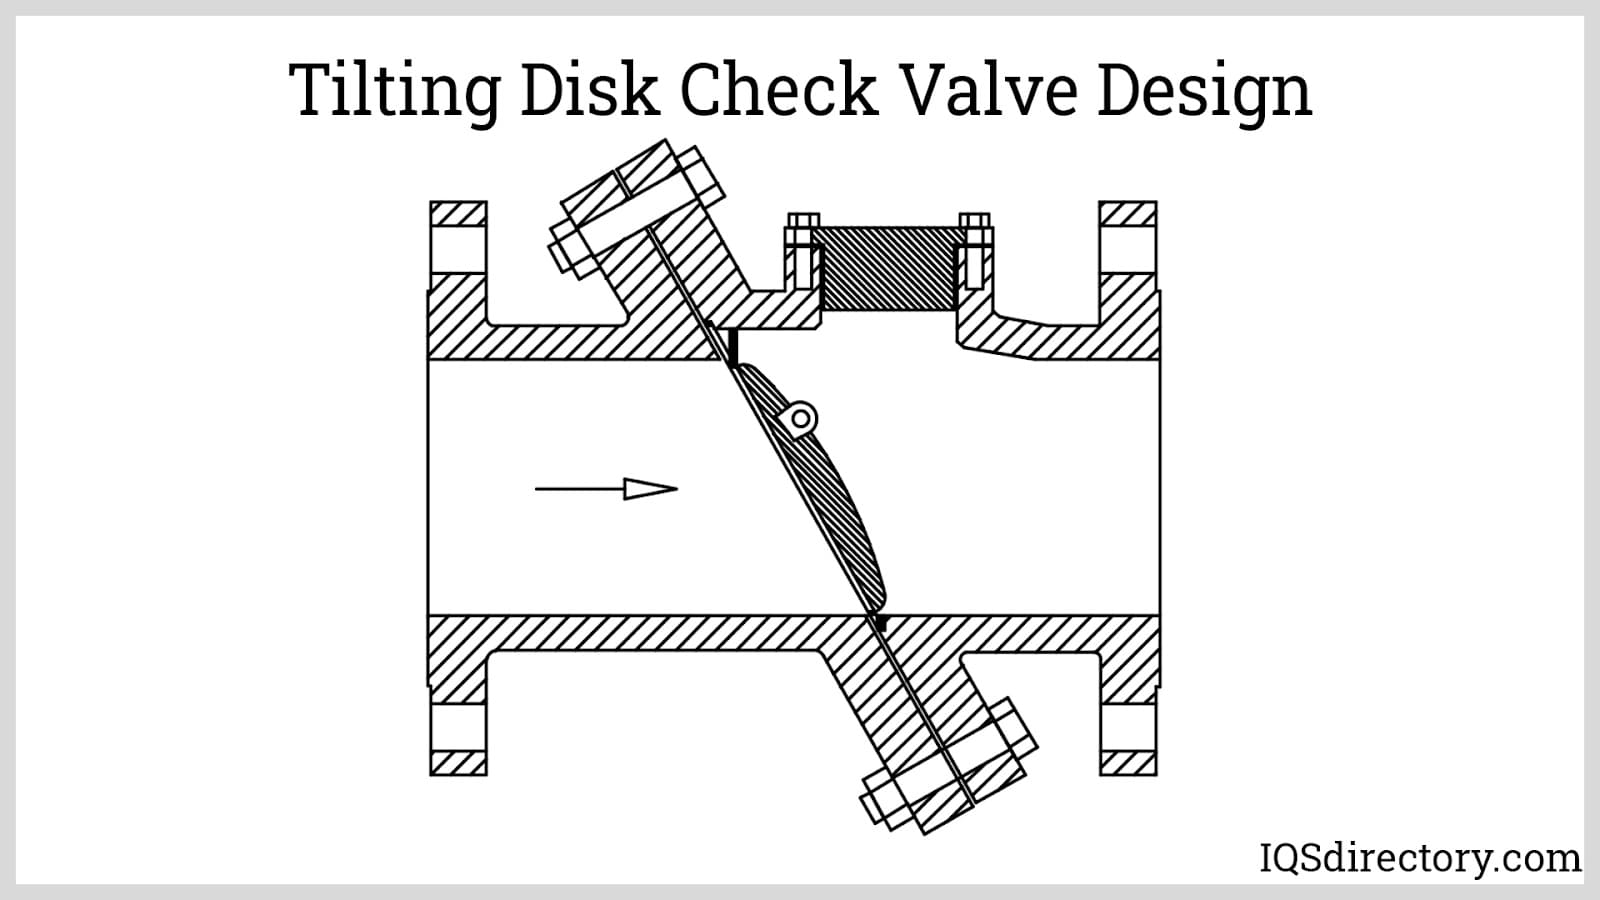 Tilting Disk Check Valve Design